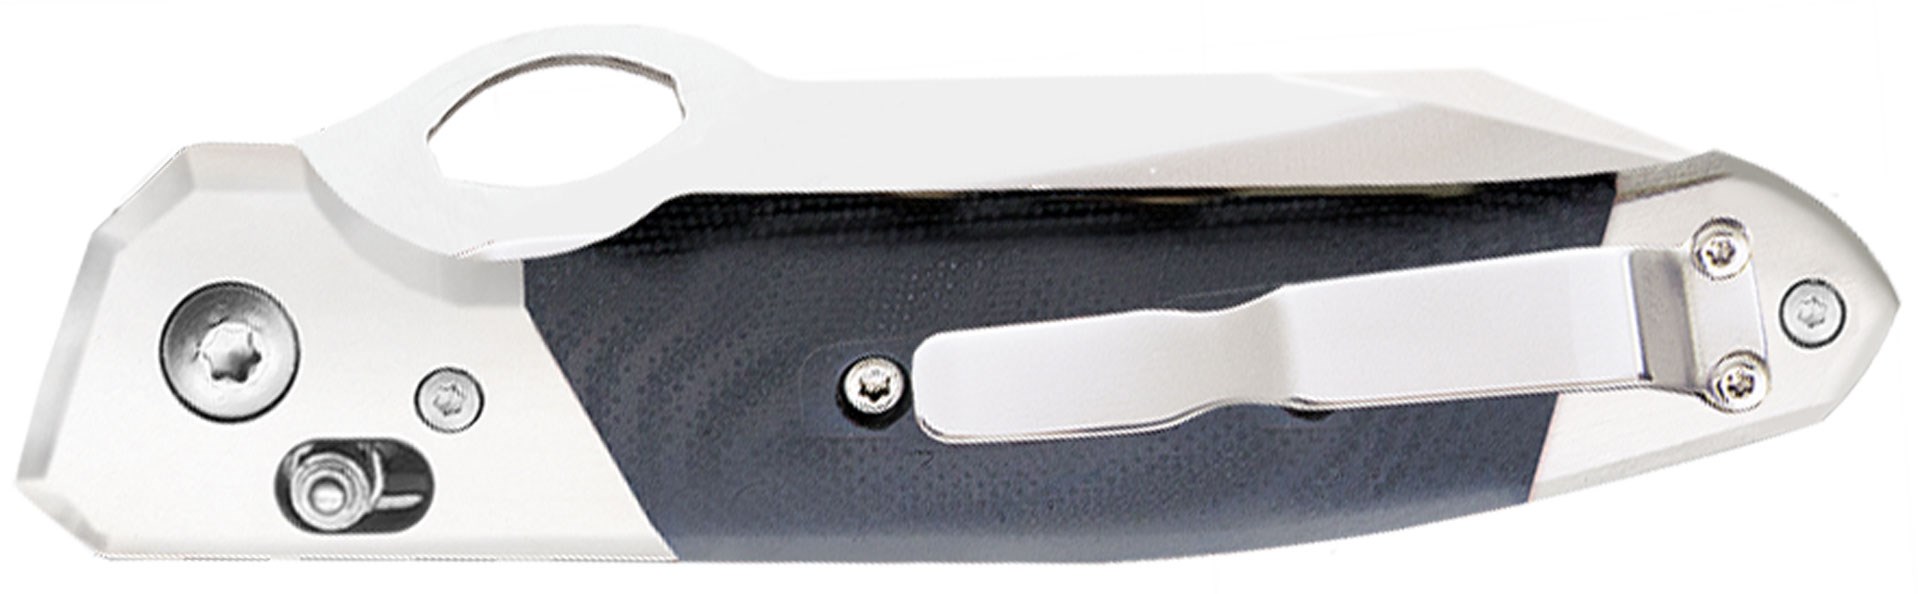 The Edge - Pocketknife Slide